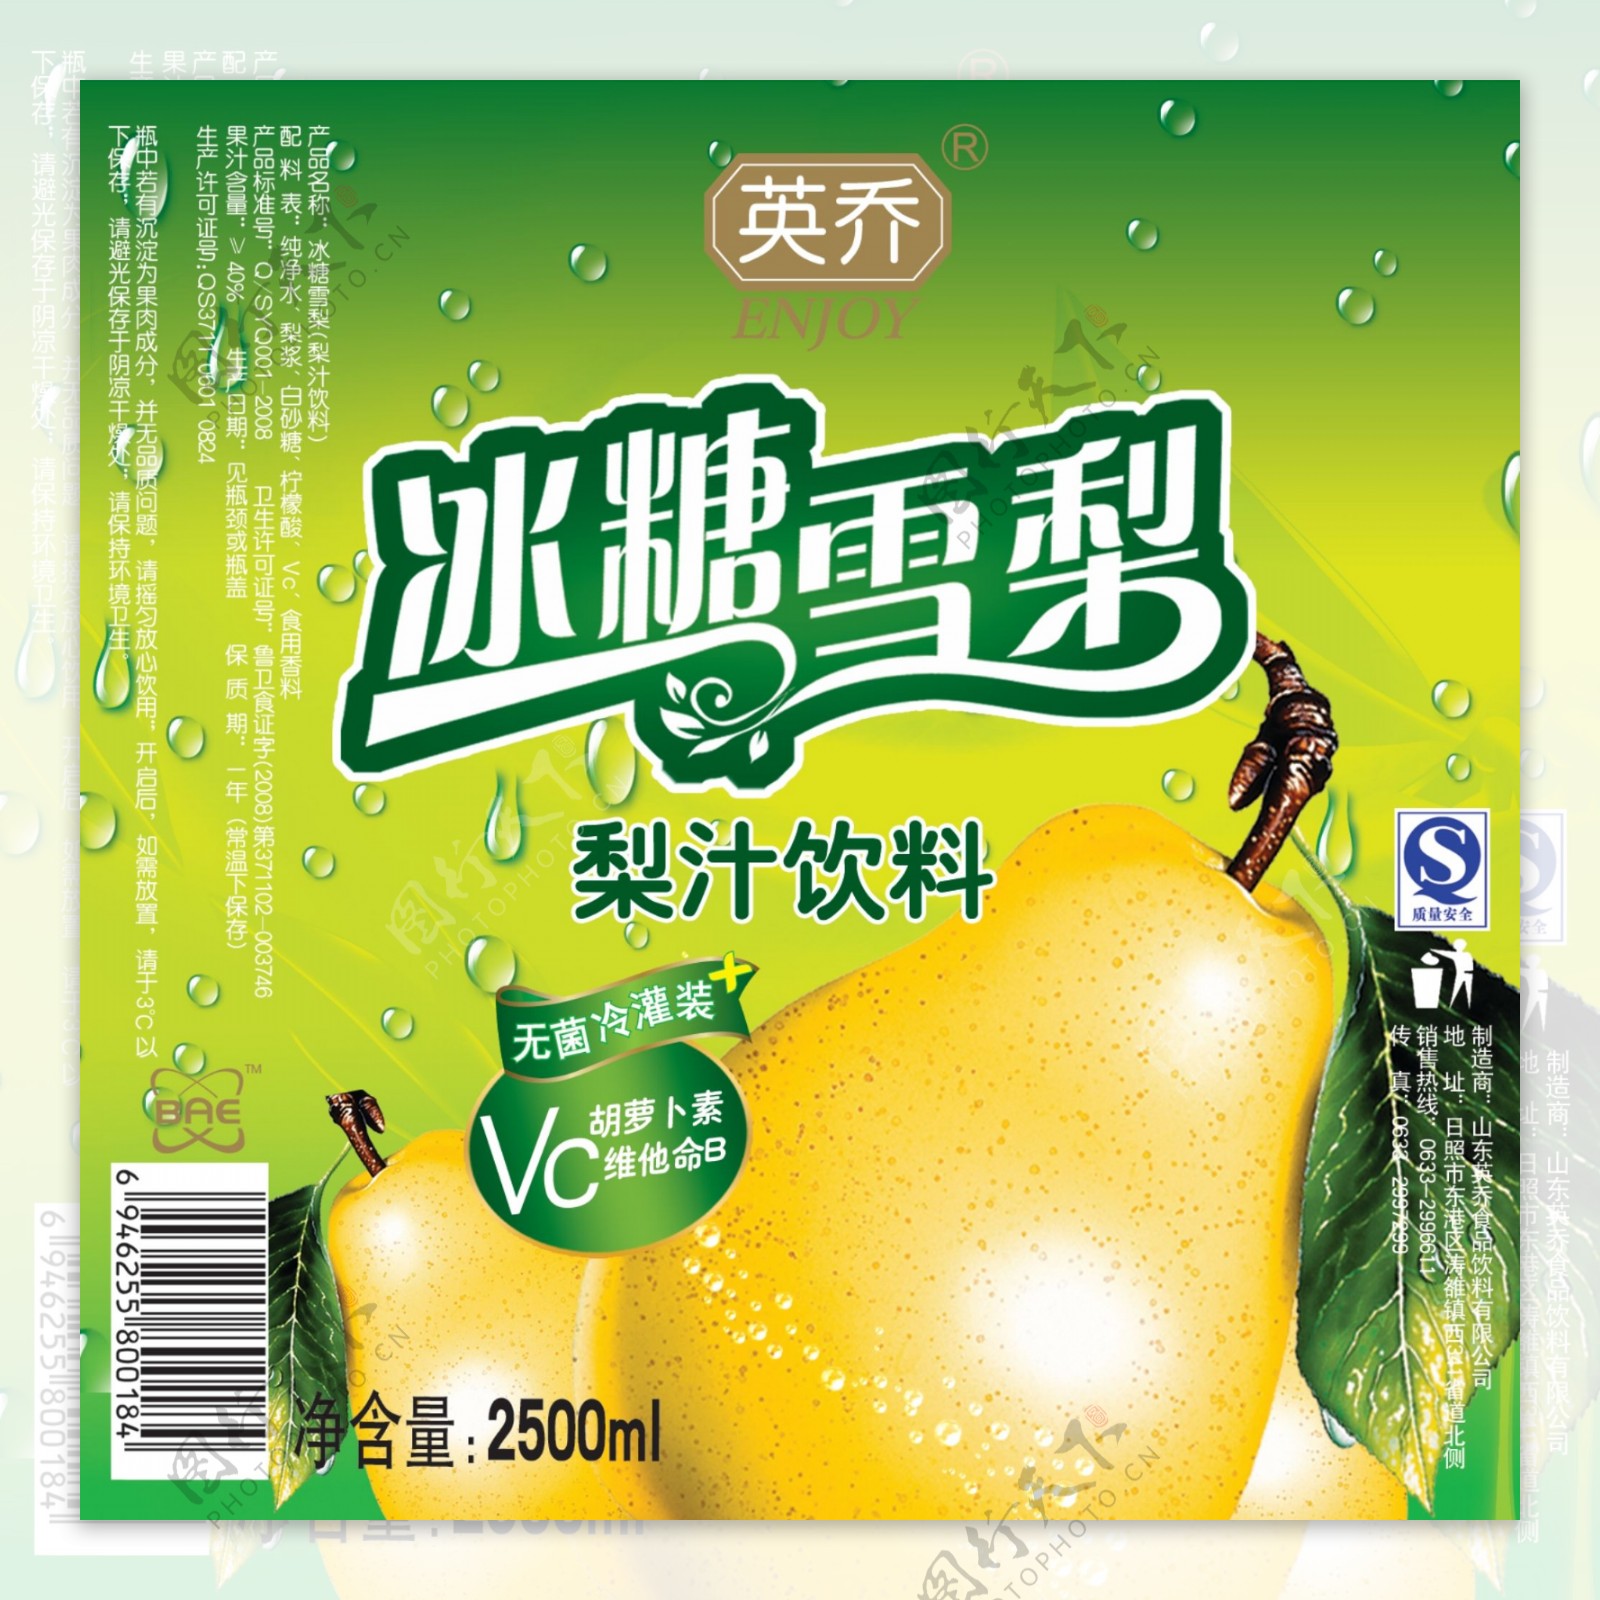 康师傅 冰糖雪梨 | Mr Kang Sugar Pear 500ml - HappyGo Asian Market